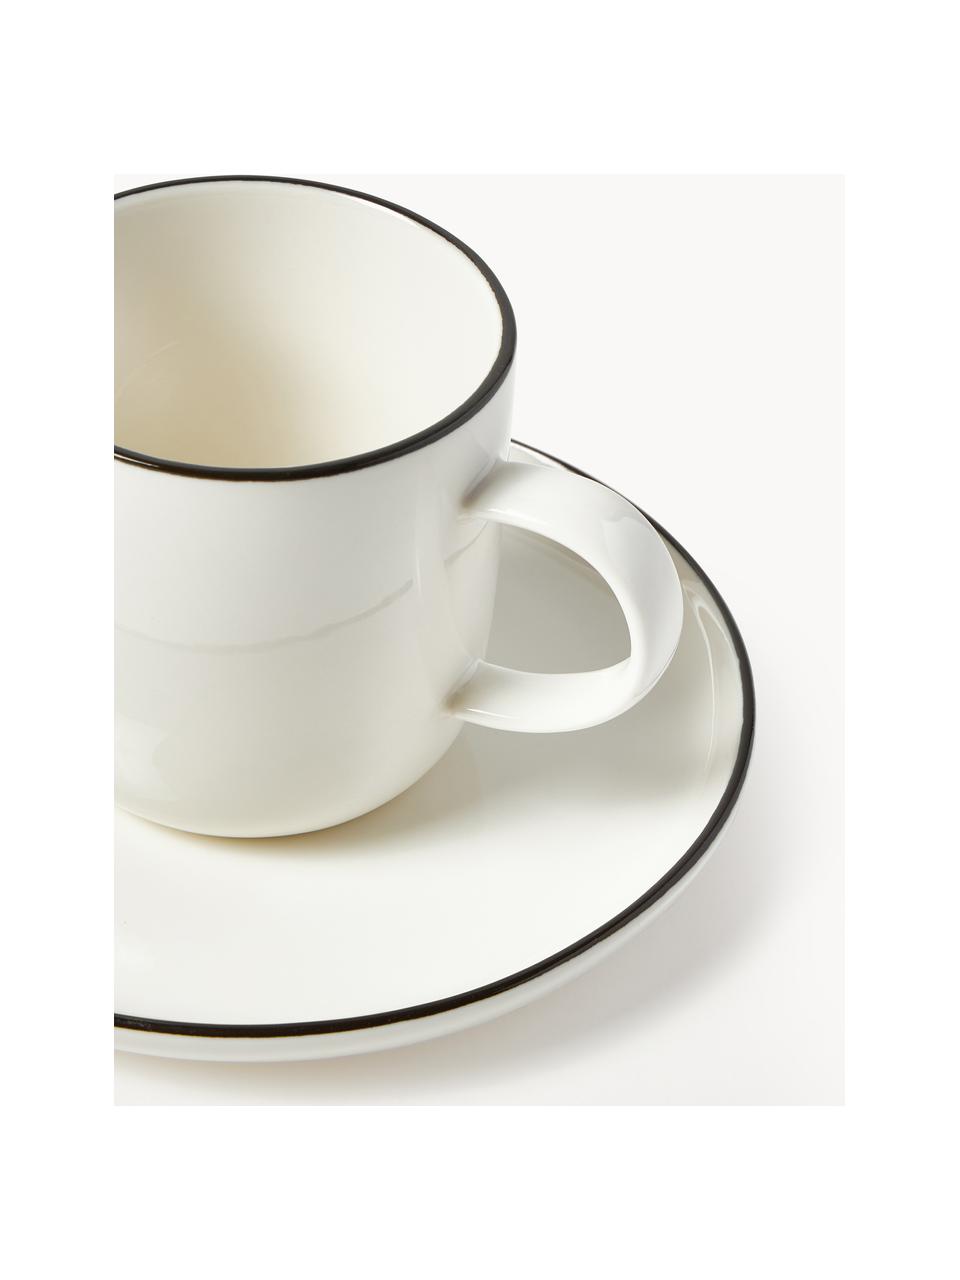 Porcelánové hrnky s podšálky na kávu Facile, 2 ks, Vysoce kvalitní tvrdý porcelán (cca 50 % kaolinu, 25 % křemene a 25 % živce), Tlumeně bílá s černým okrajem, Ø 8 cm, V 8 cm, 250 ml